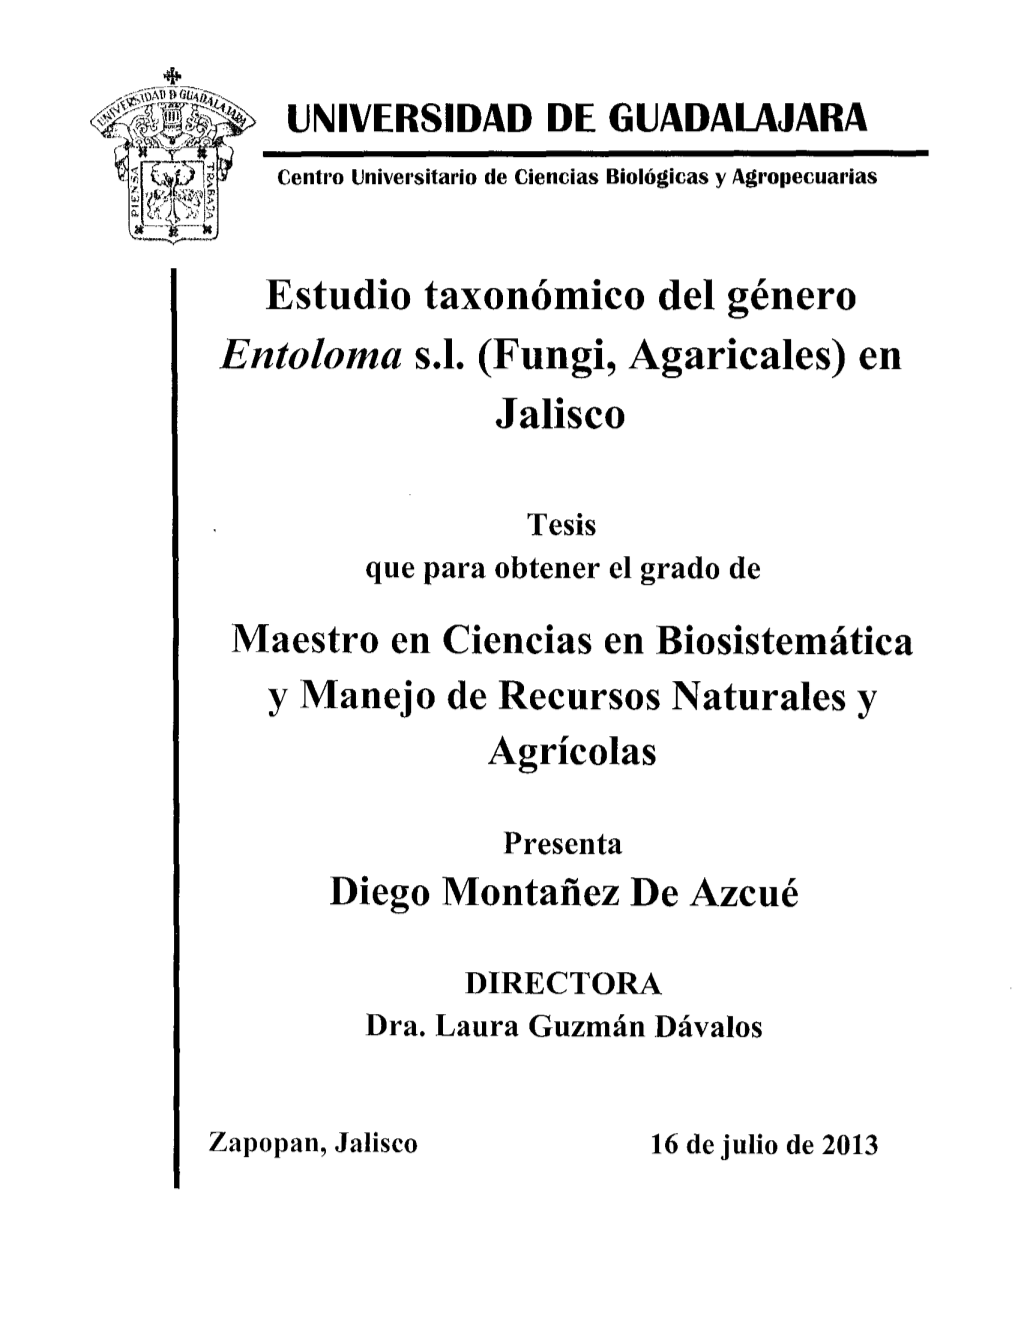 Estudio Taxonómico Del Género Entoloma S.L. (Fungi, Agaricales) En Jalisco